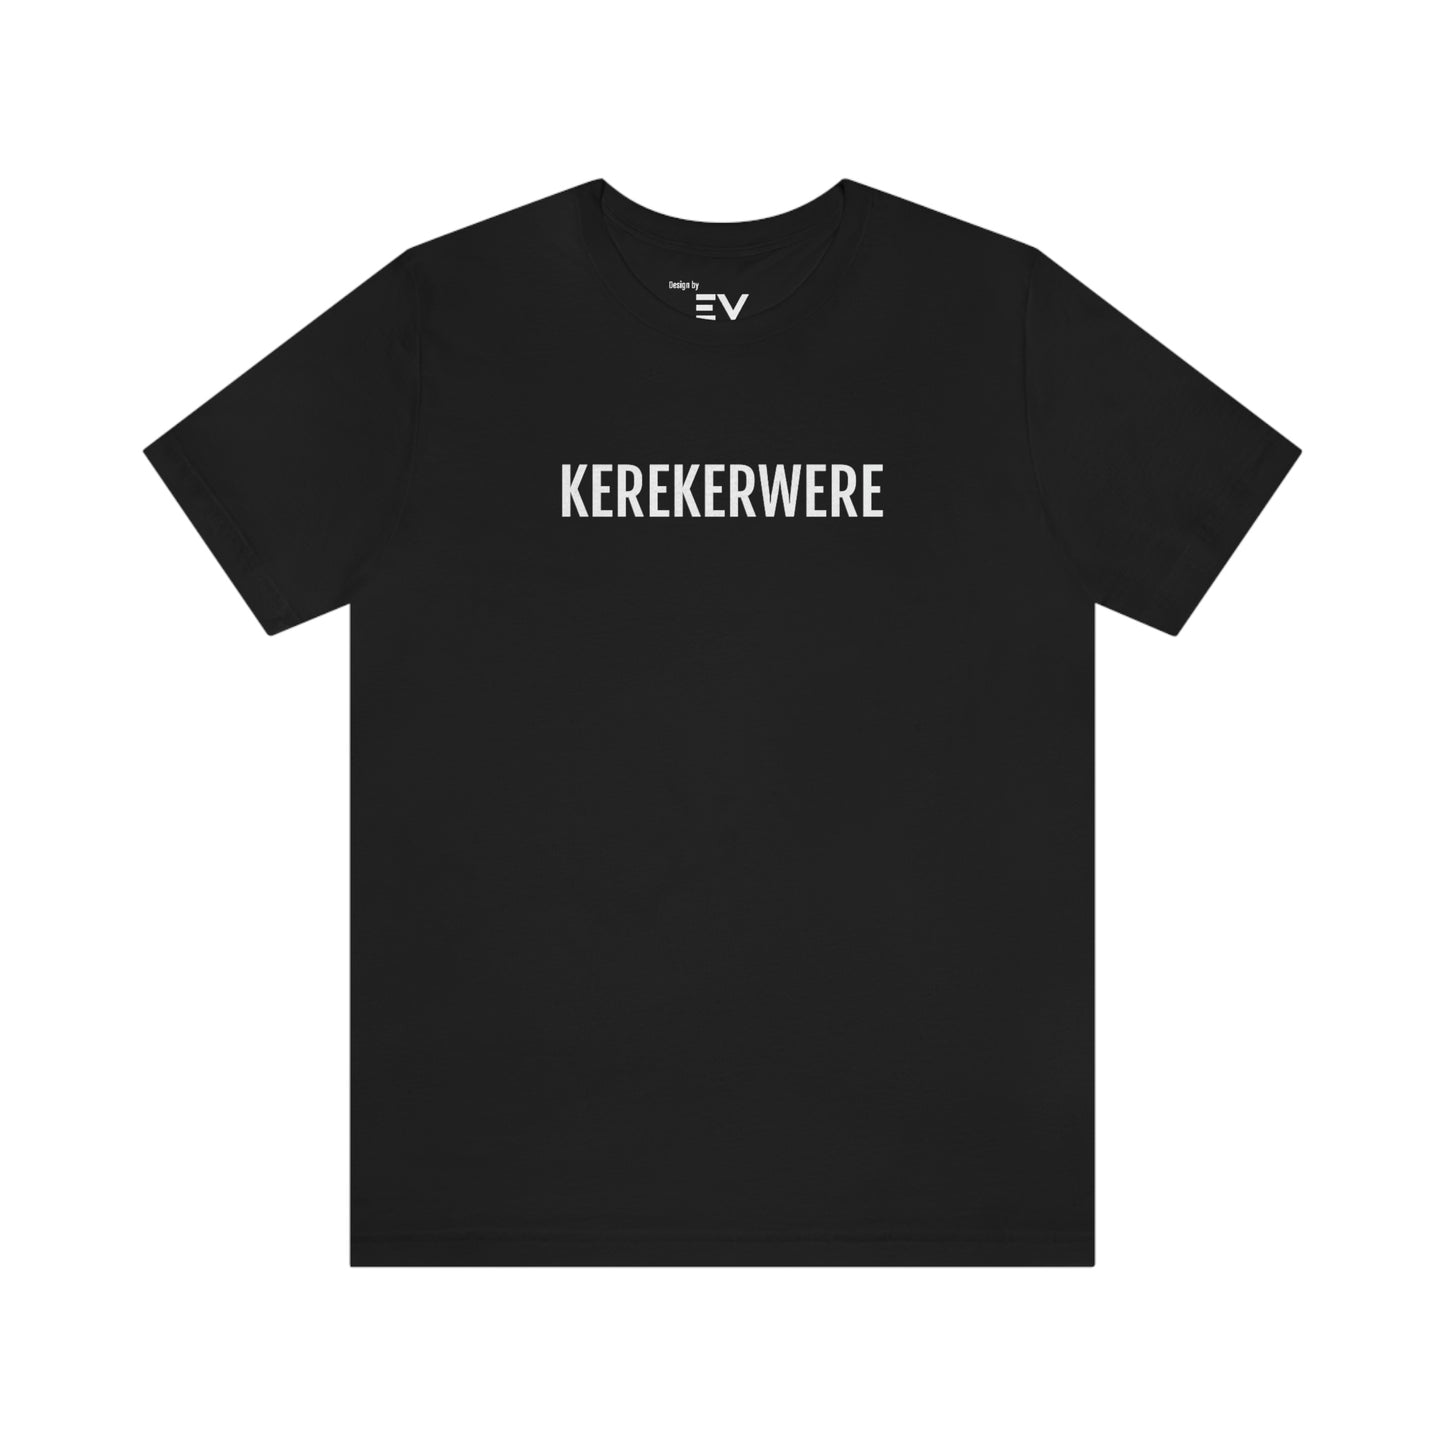 KEREKERWERE | Unisex T-Shirt uit West-Vlaanderen